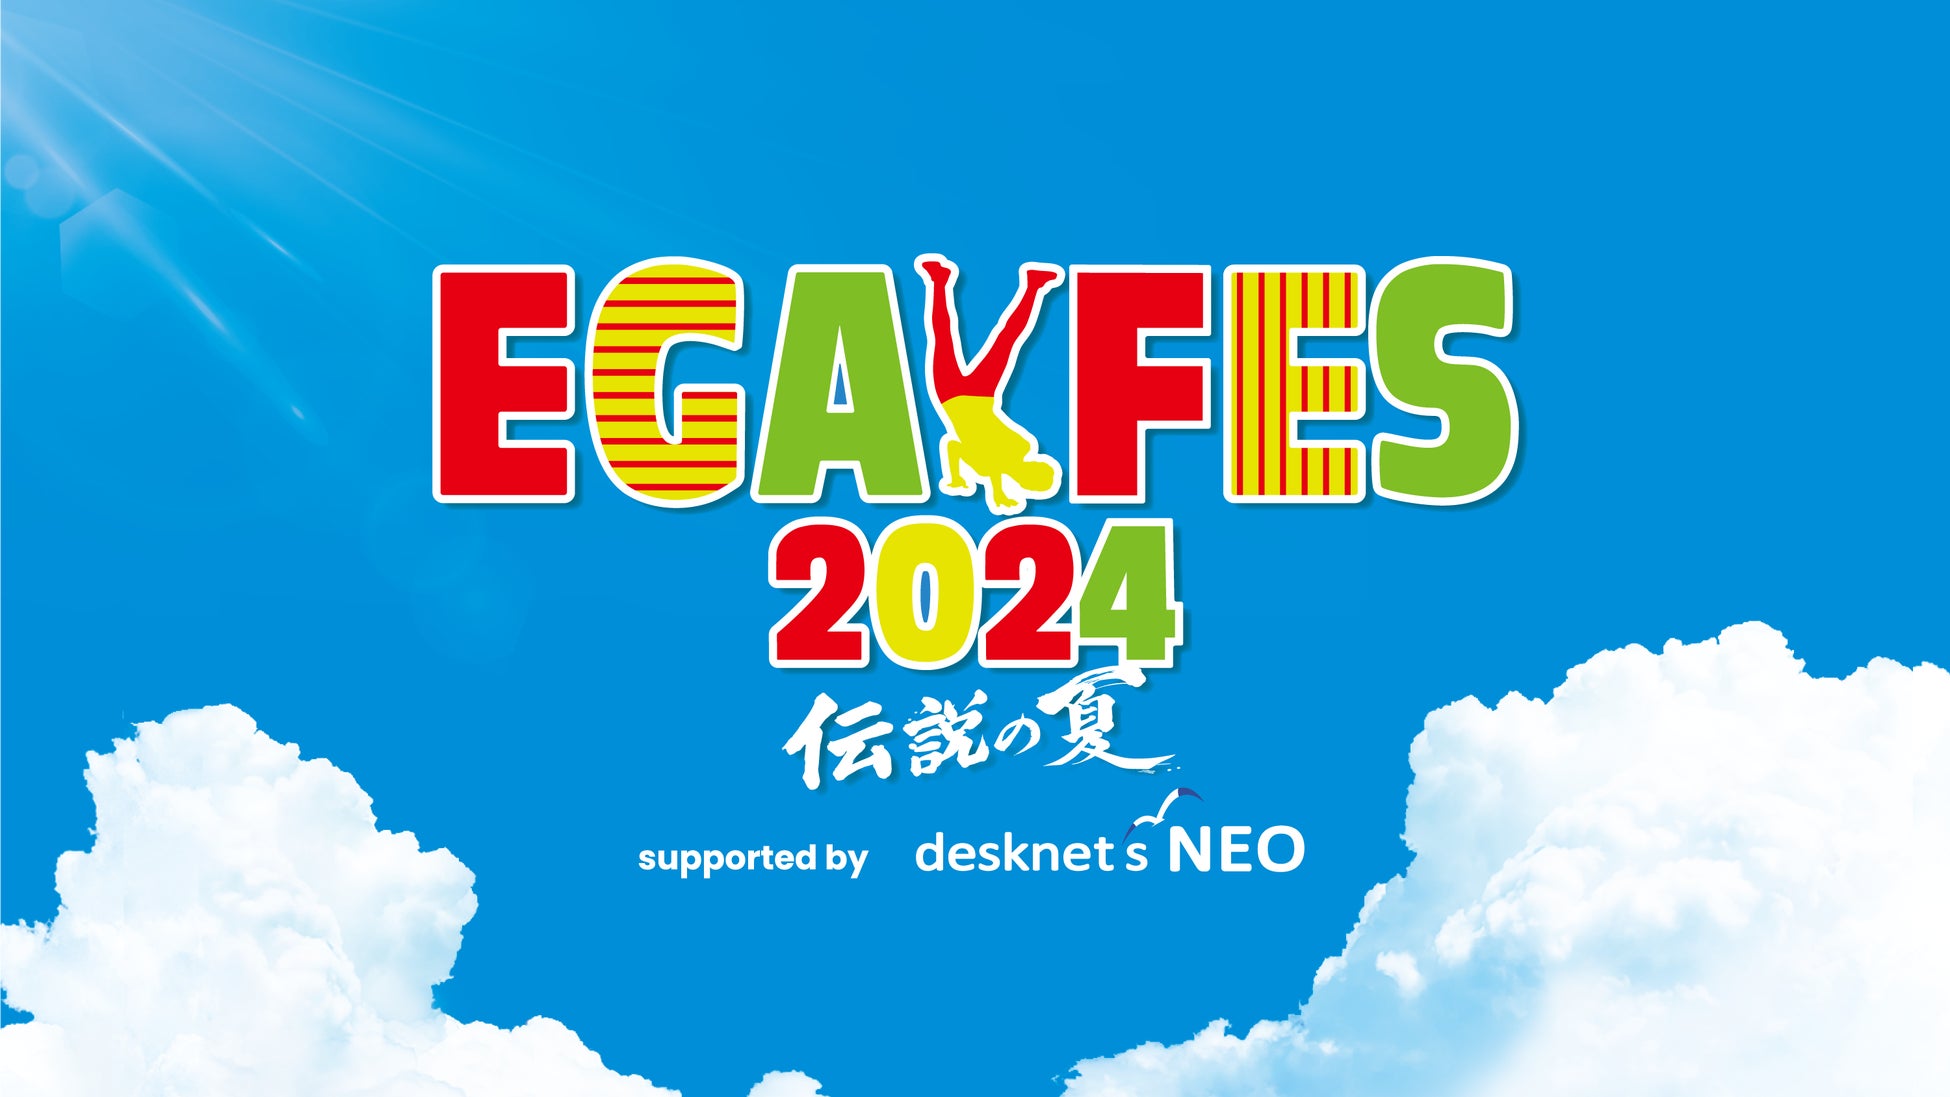 「エガフェス2024 supported by desknet’s NEO」8月17日(土)前夜祭・8月18日(日)大本番をLeminoで生配信！